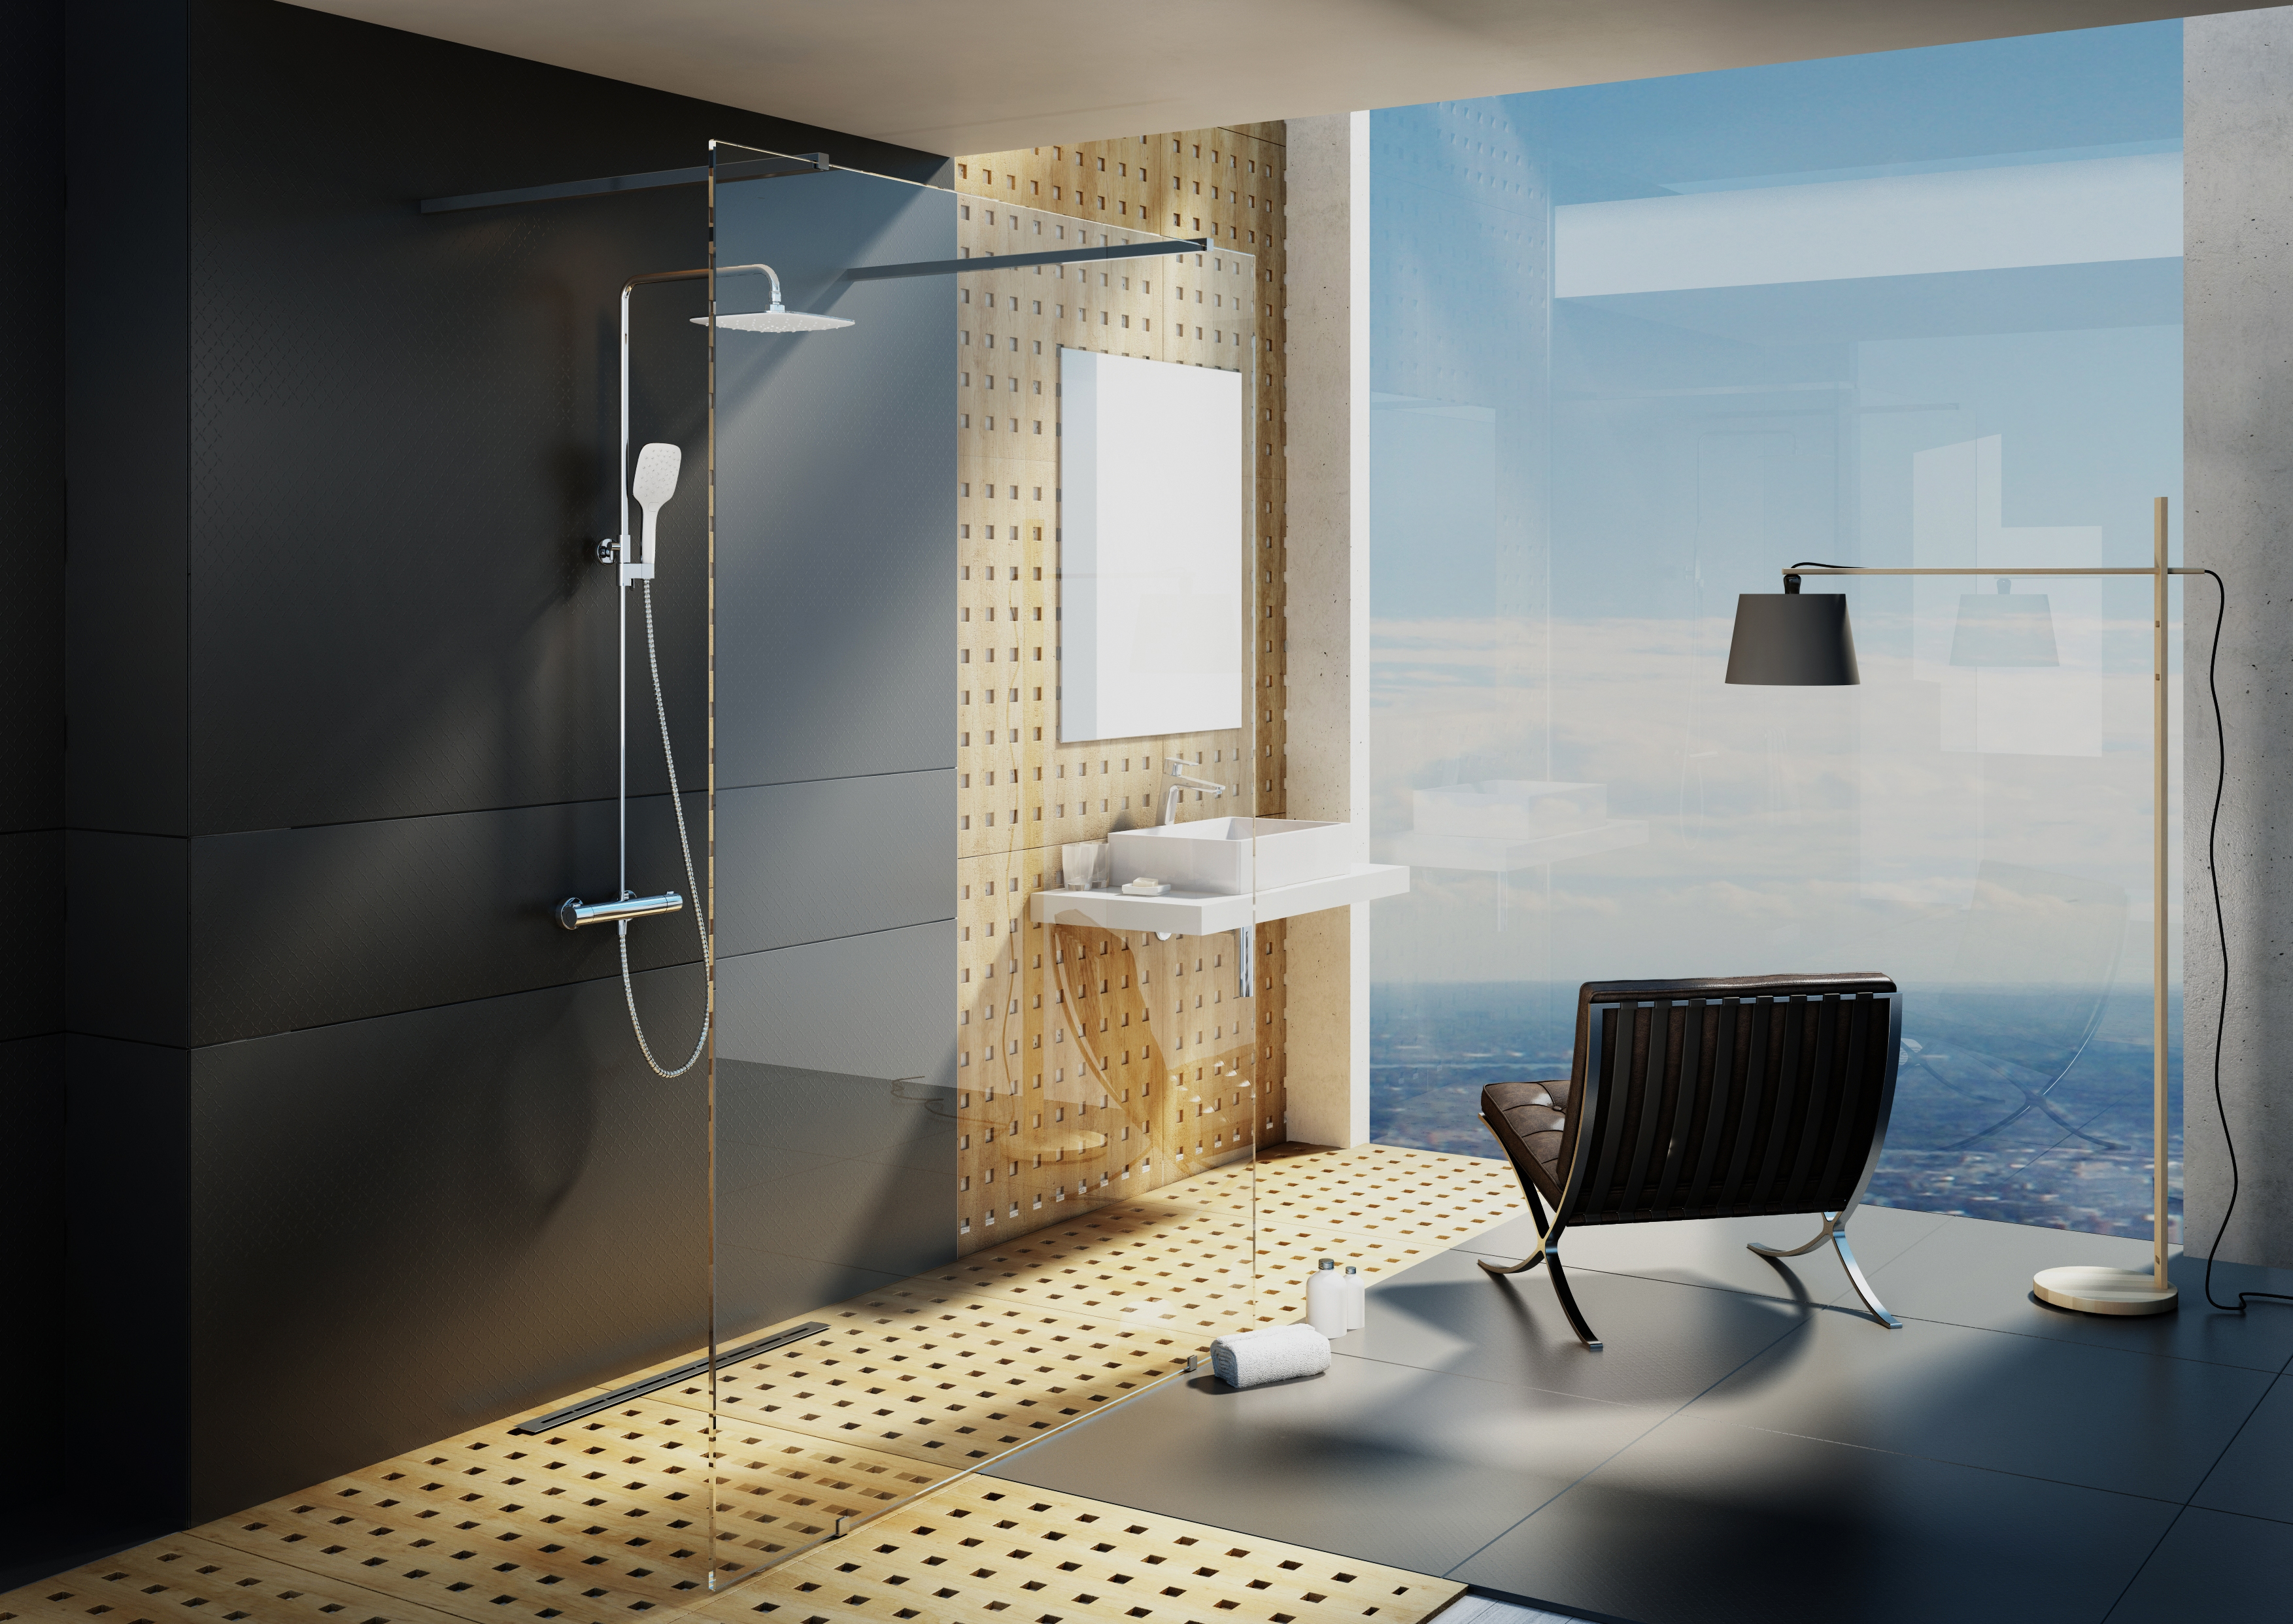 Loft lakásba javasoljuk a milliméternyi pontossággal alakítható, légiesen könnyed, zuhanyfolyókával felszerelhető Walk-In zuhanykabint.